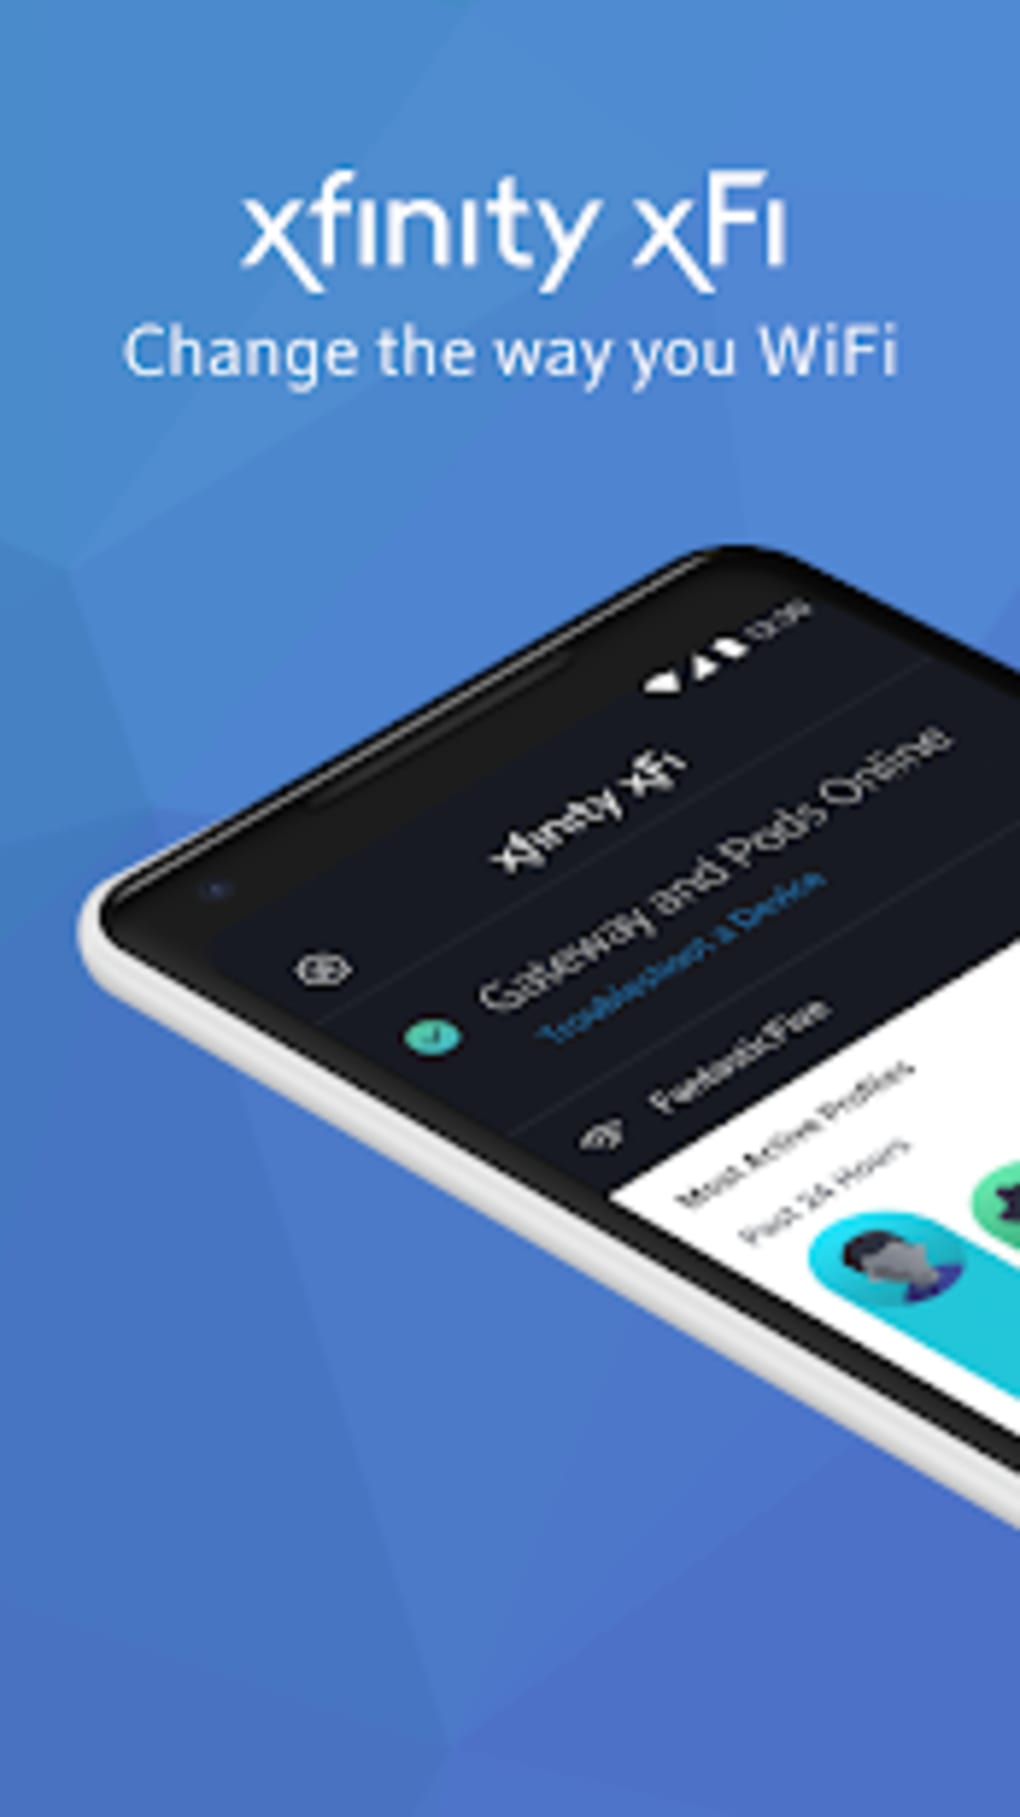 xfinity app for xbox one 2017